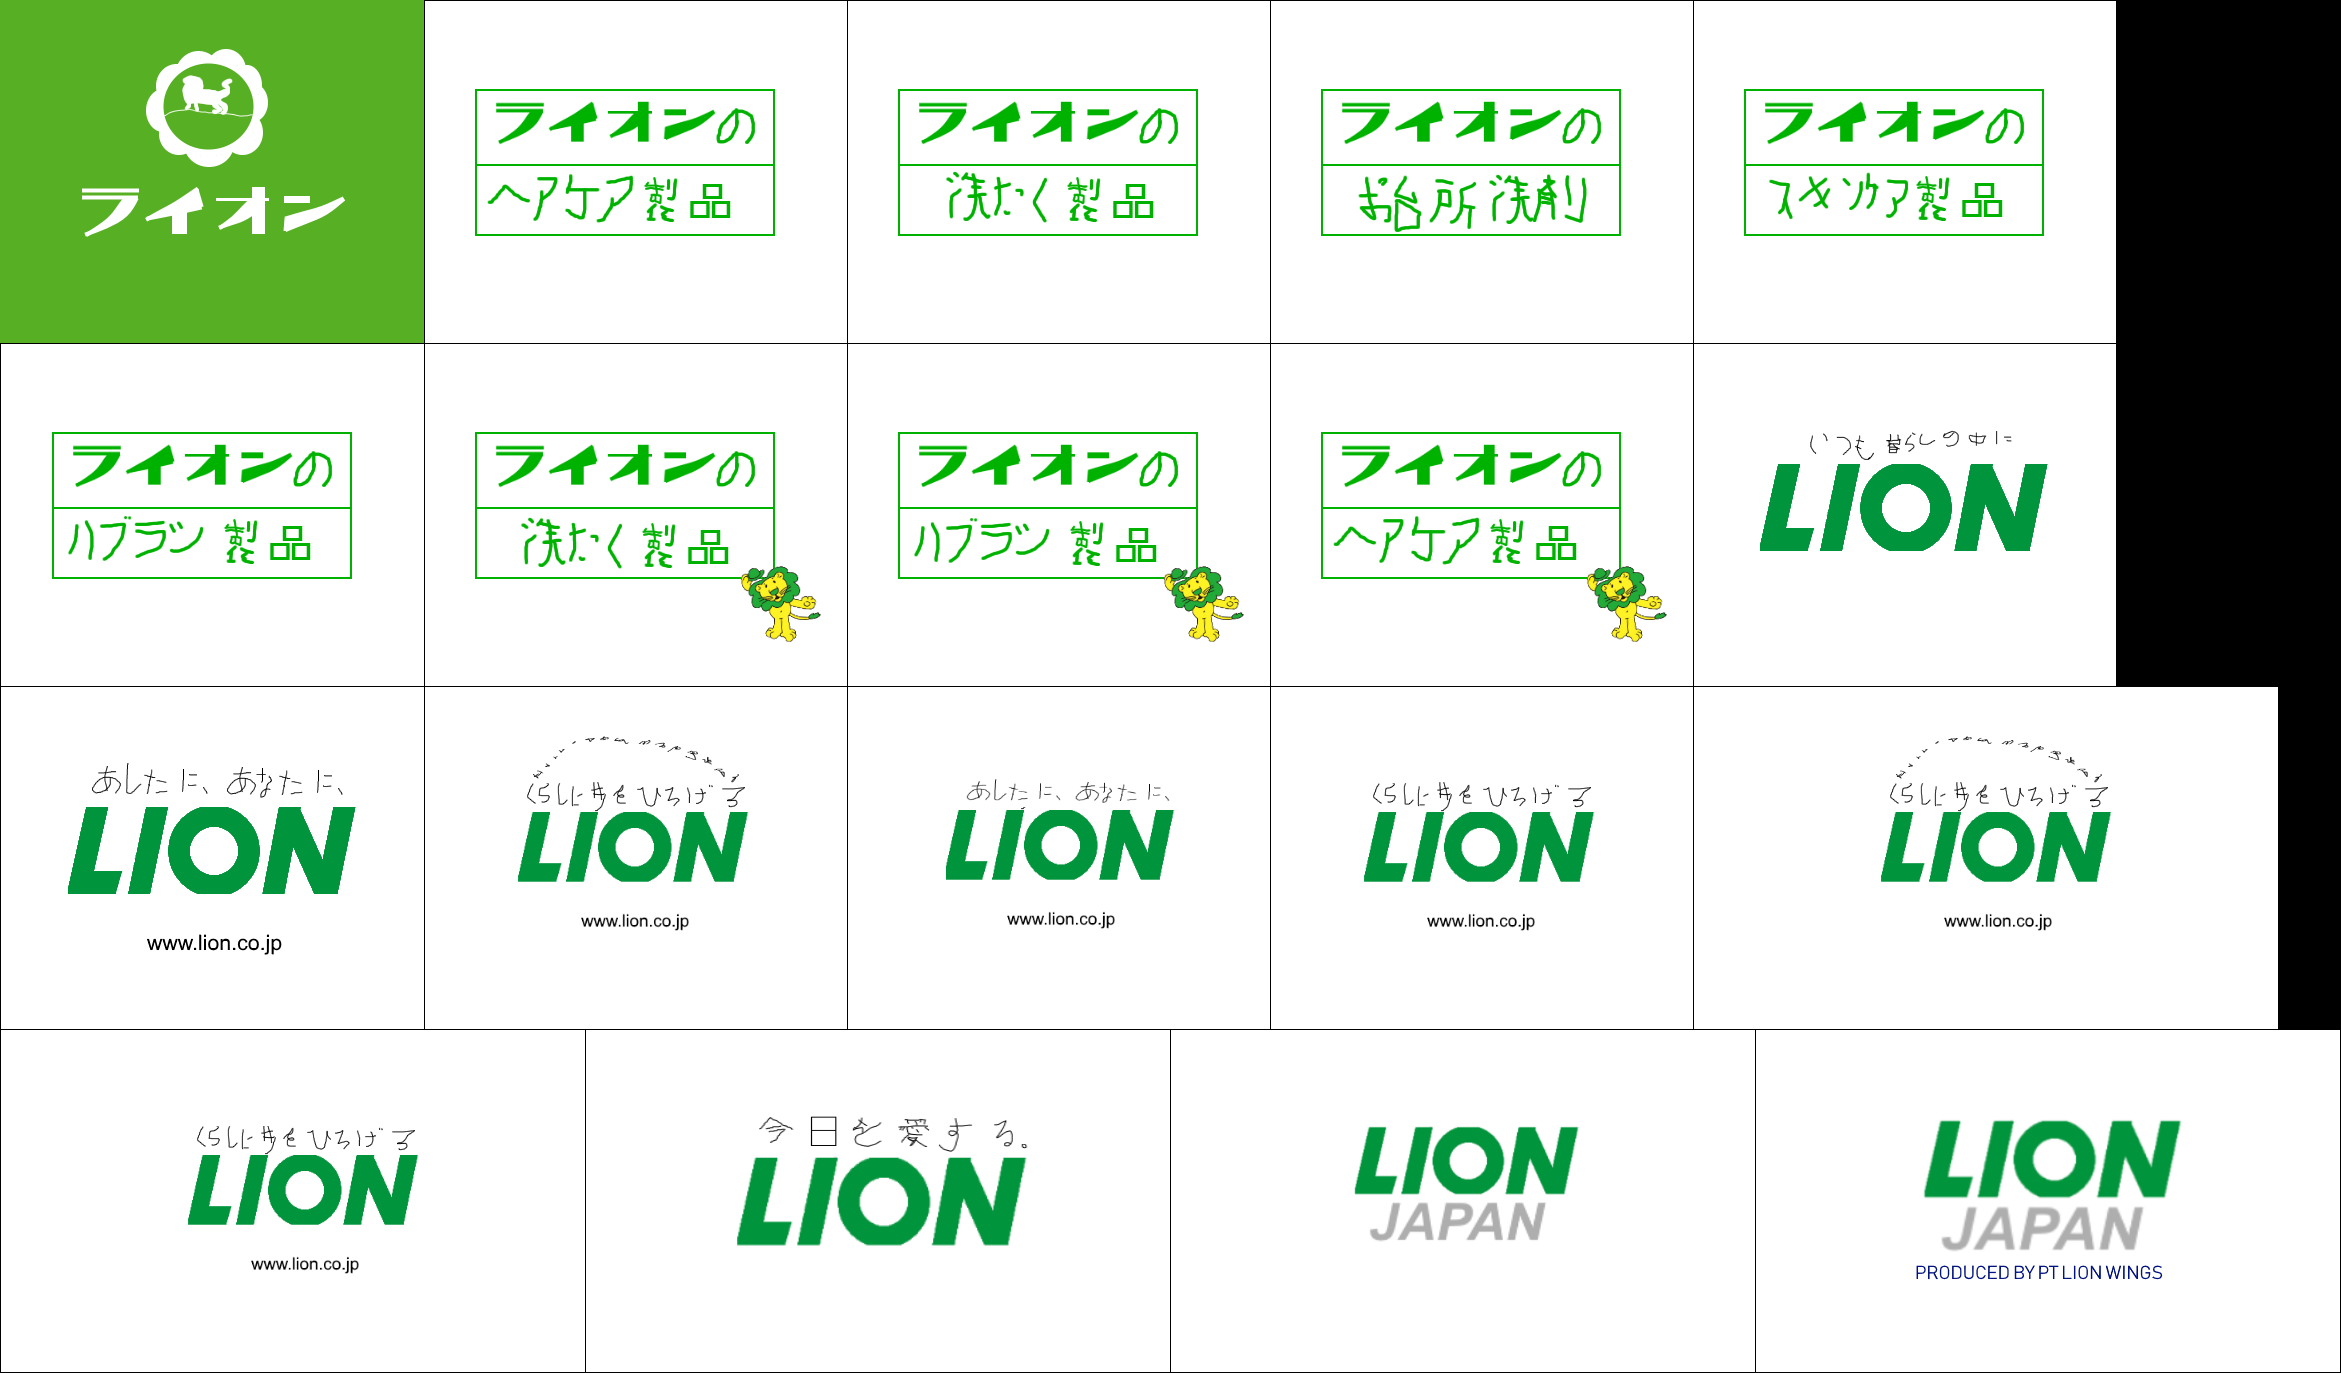 LION corporation